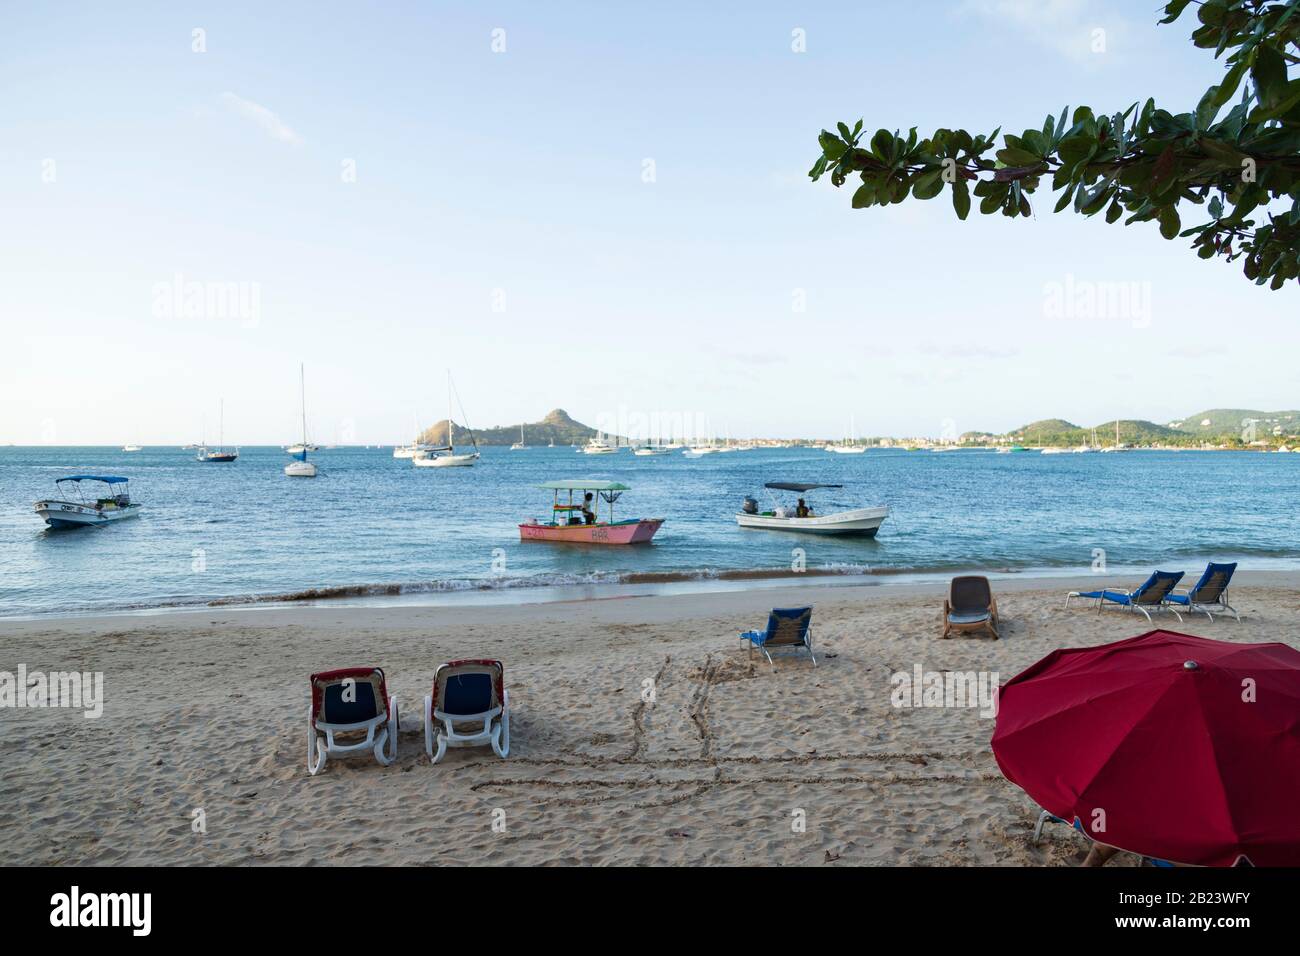 Embellissez la journée lumineuse à la plage, des chaises de plage vides, un parasol et des bateaux de pêche près de la rive à Reduit Beach, gros Islet, Sainte-Lucie Banque D'Images